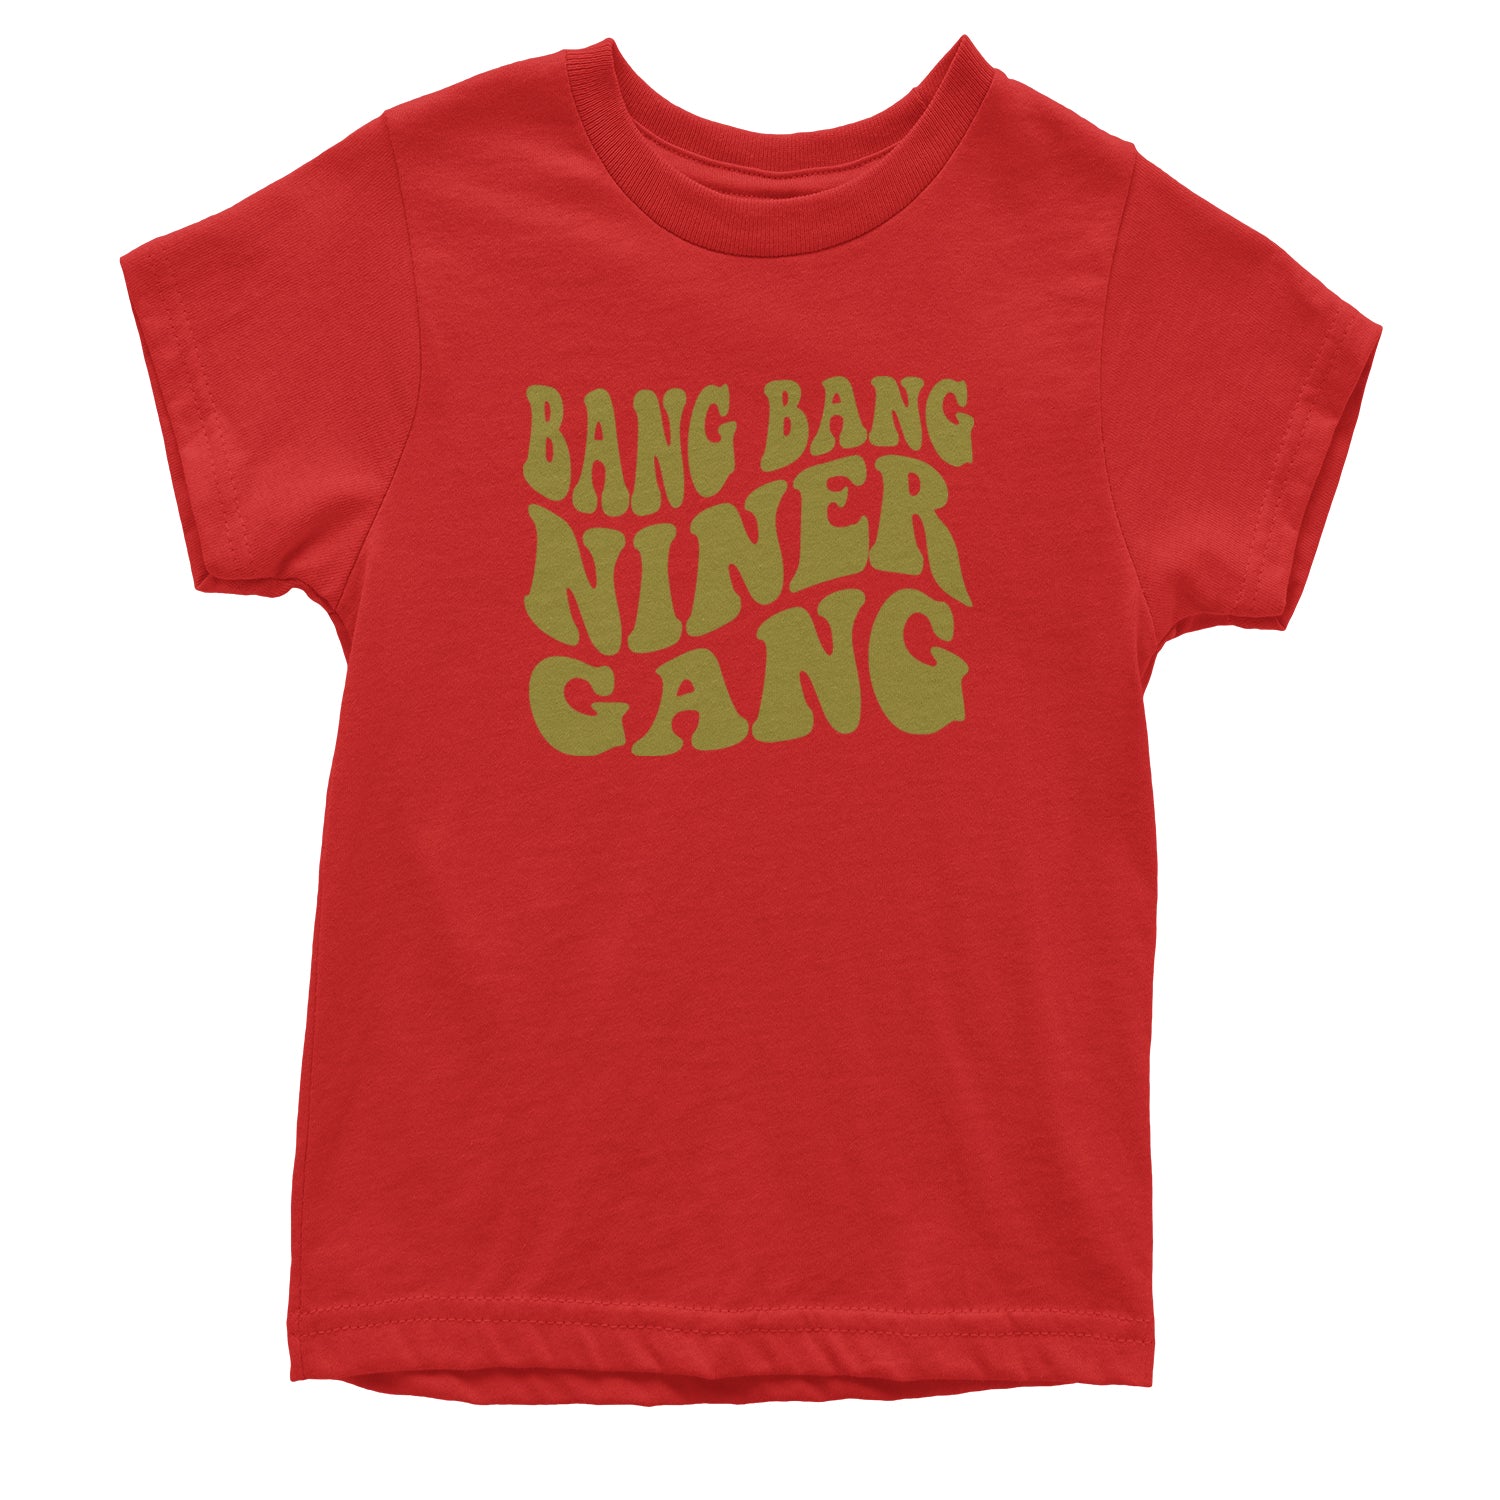 WAVE Bang Bang Niner Gang San Francisco Youth T-shirt